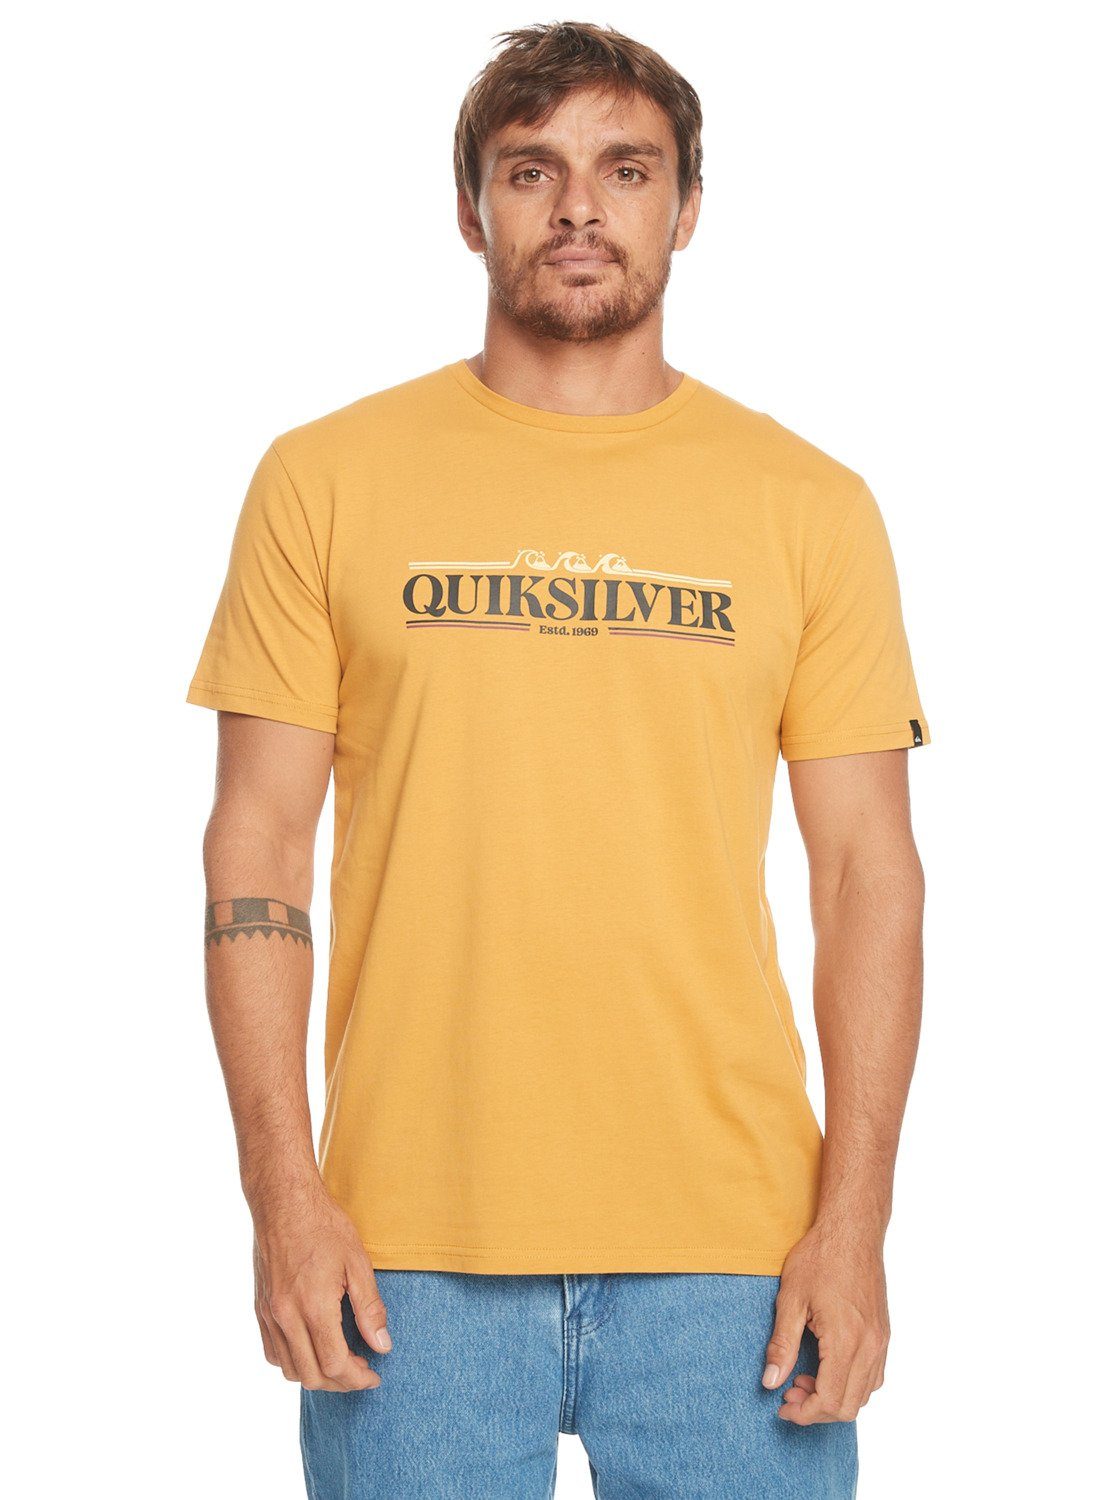 Quiksilver T-Shirt Mustard Gradient Line